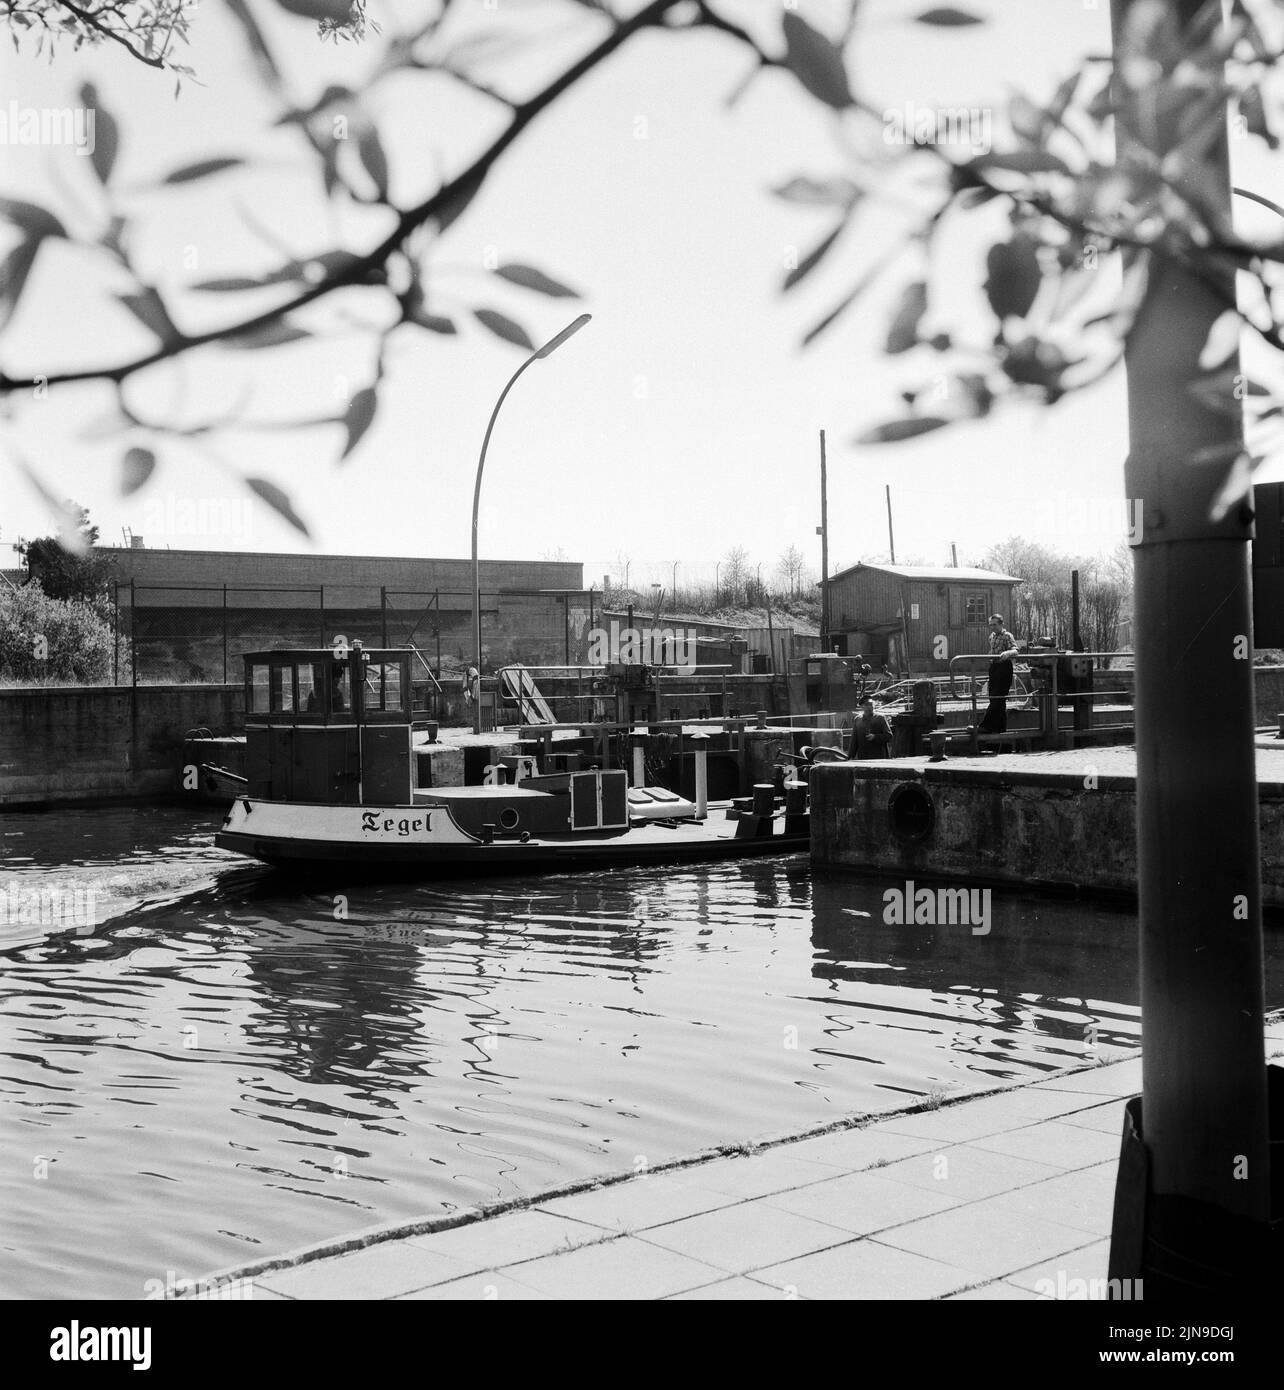 Original-Bildunterschrift: Industriestadt Berlin - unser Bild zeigt die Schleuse in Neukölln, Berlin, Deutschland 1961. Stock Photo